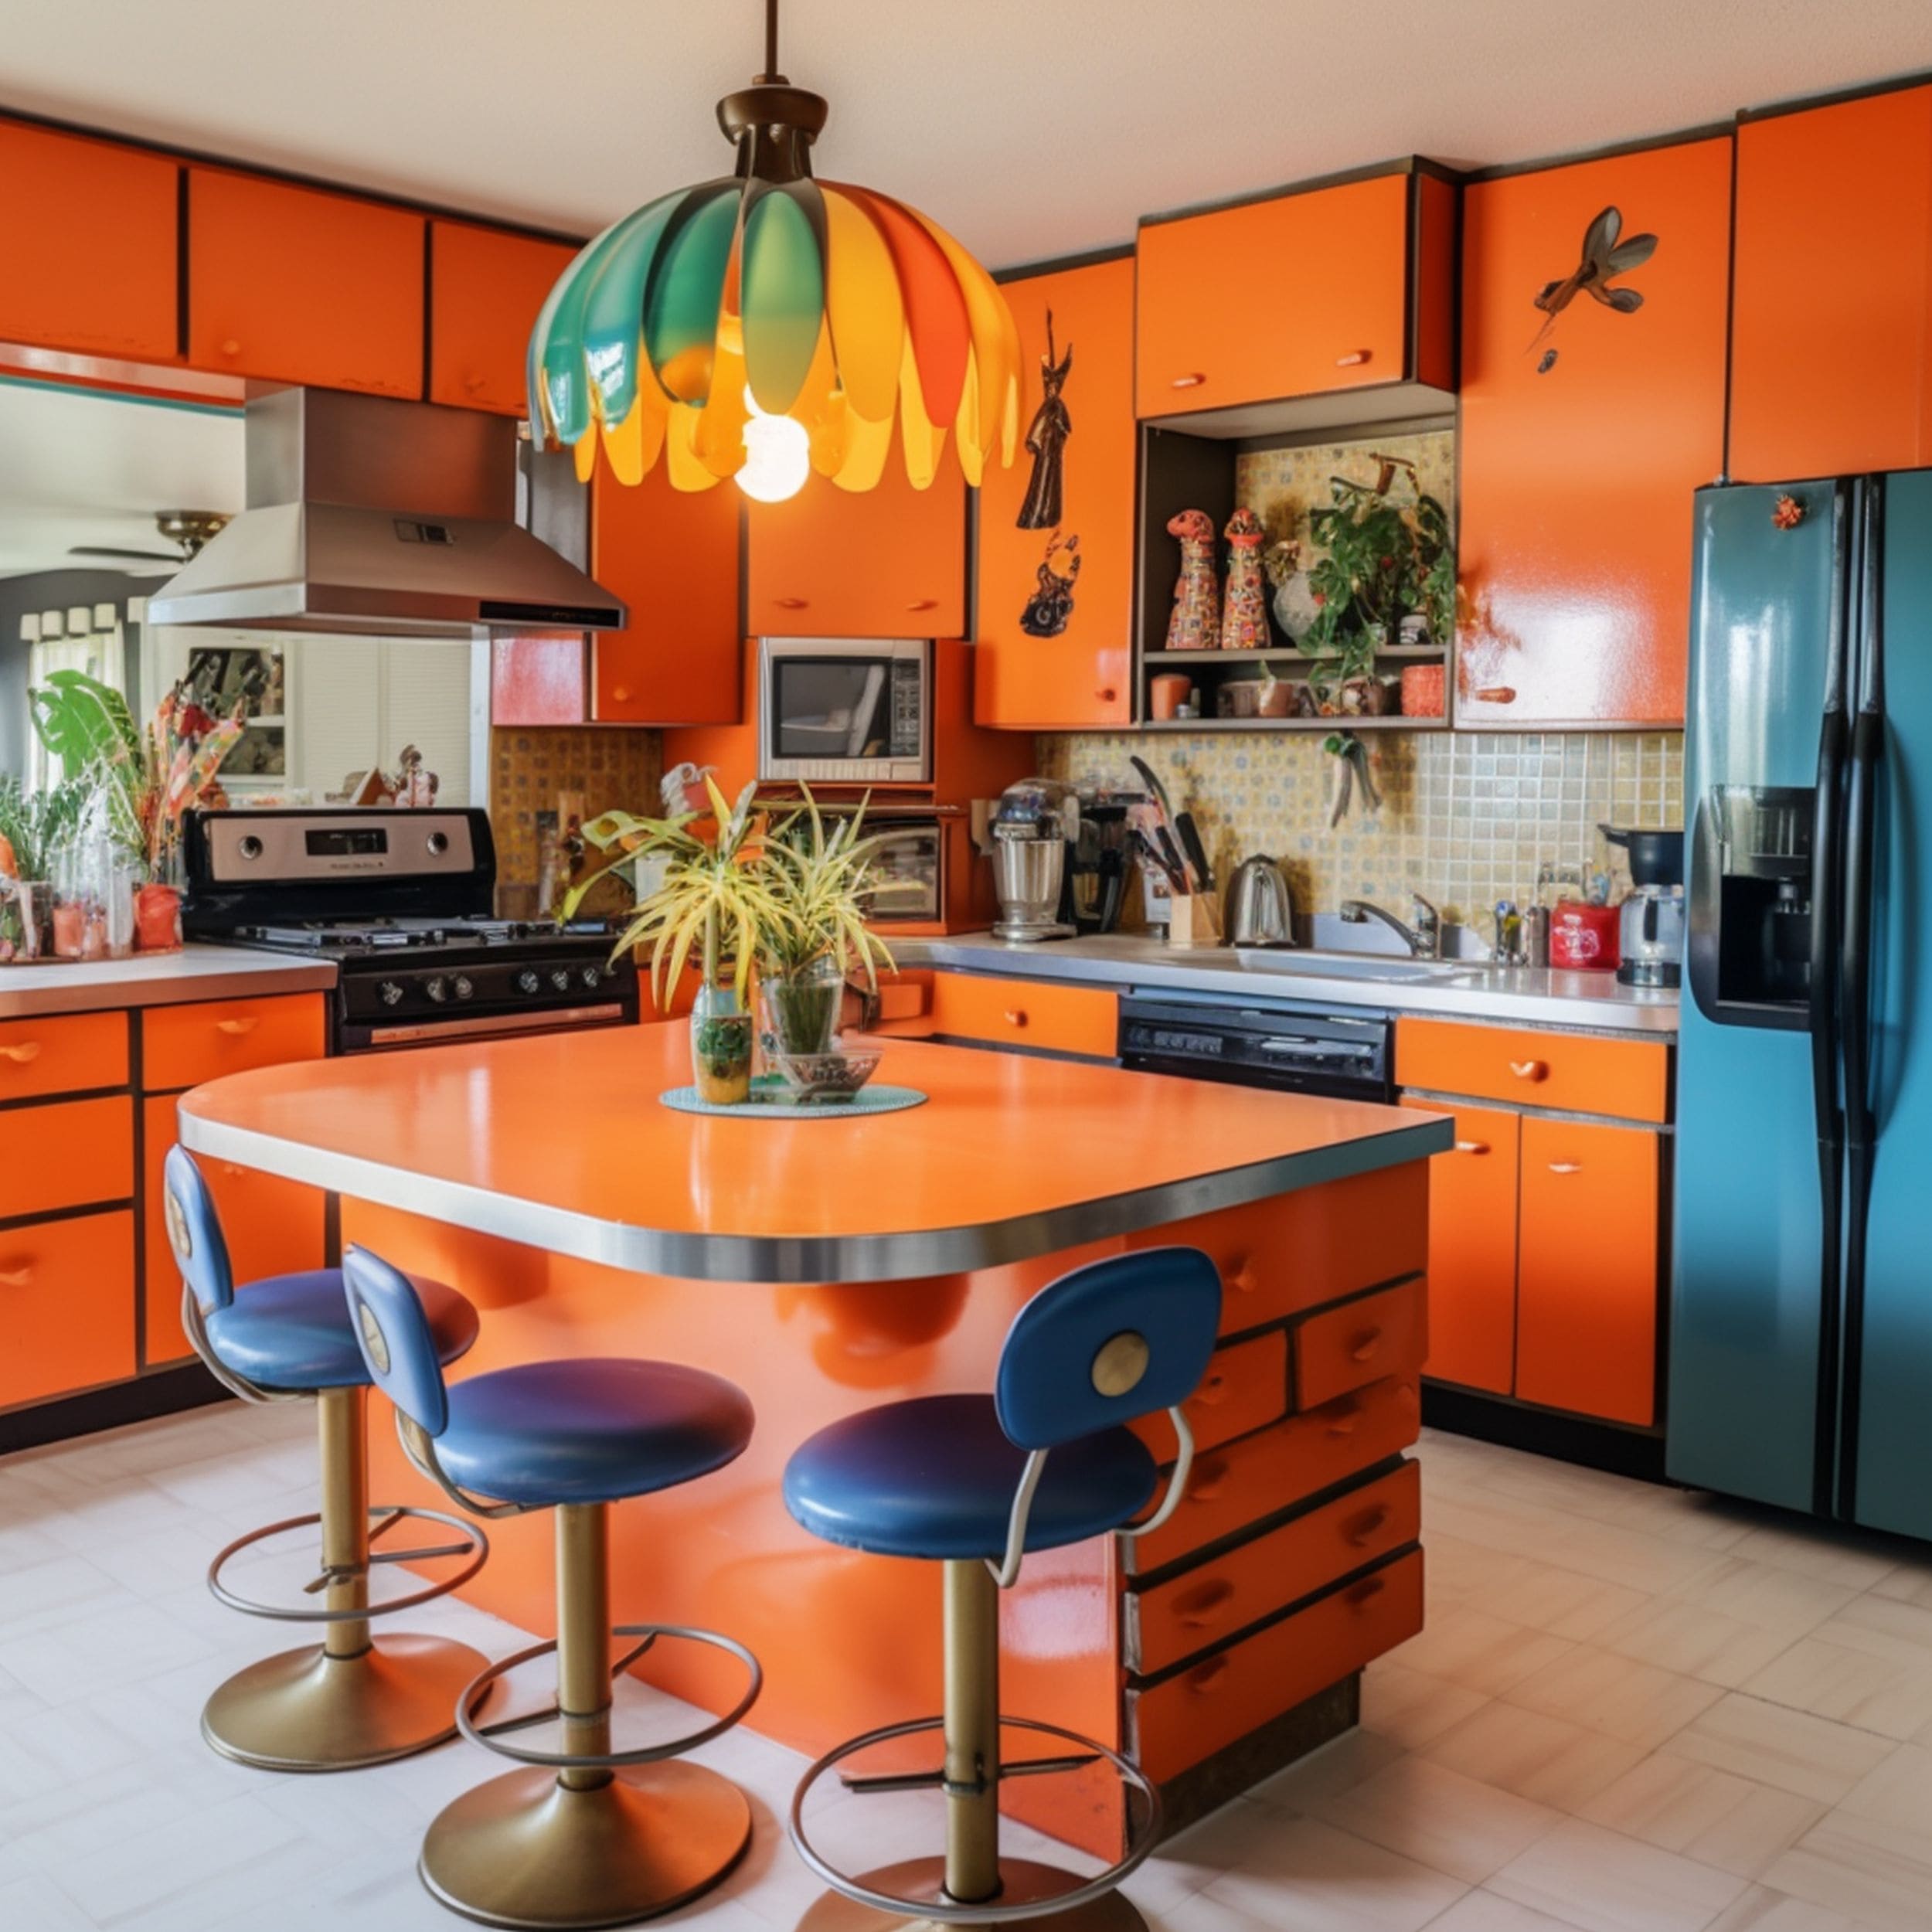 Kitschy Orange Kitchen With Blue Fridge